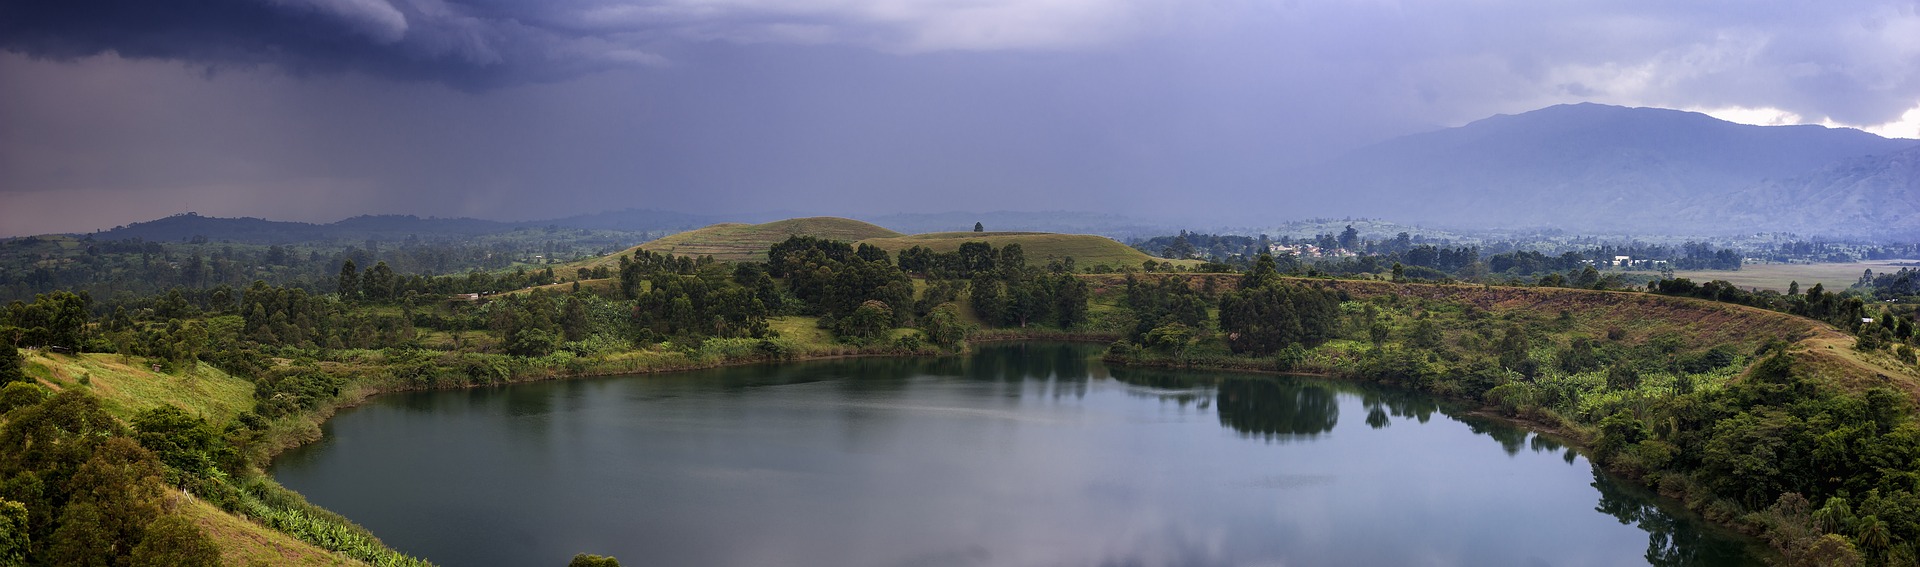 Uganda Lakes & Nature, - Eco Hub Africa